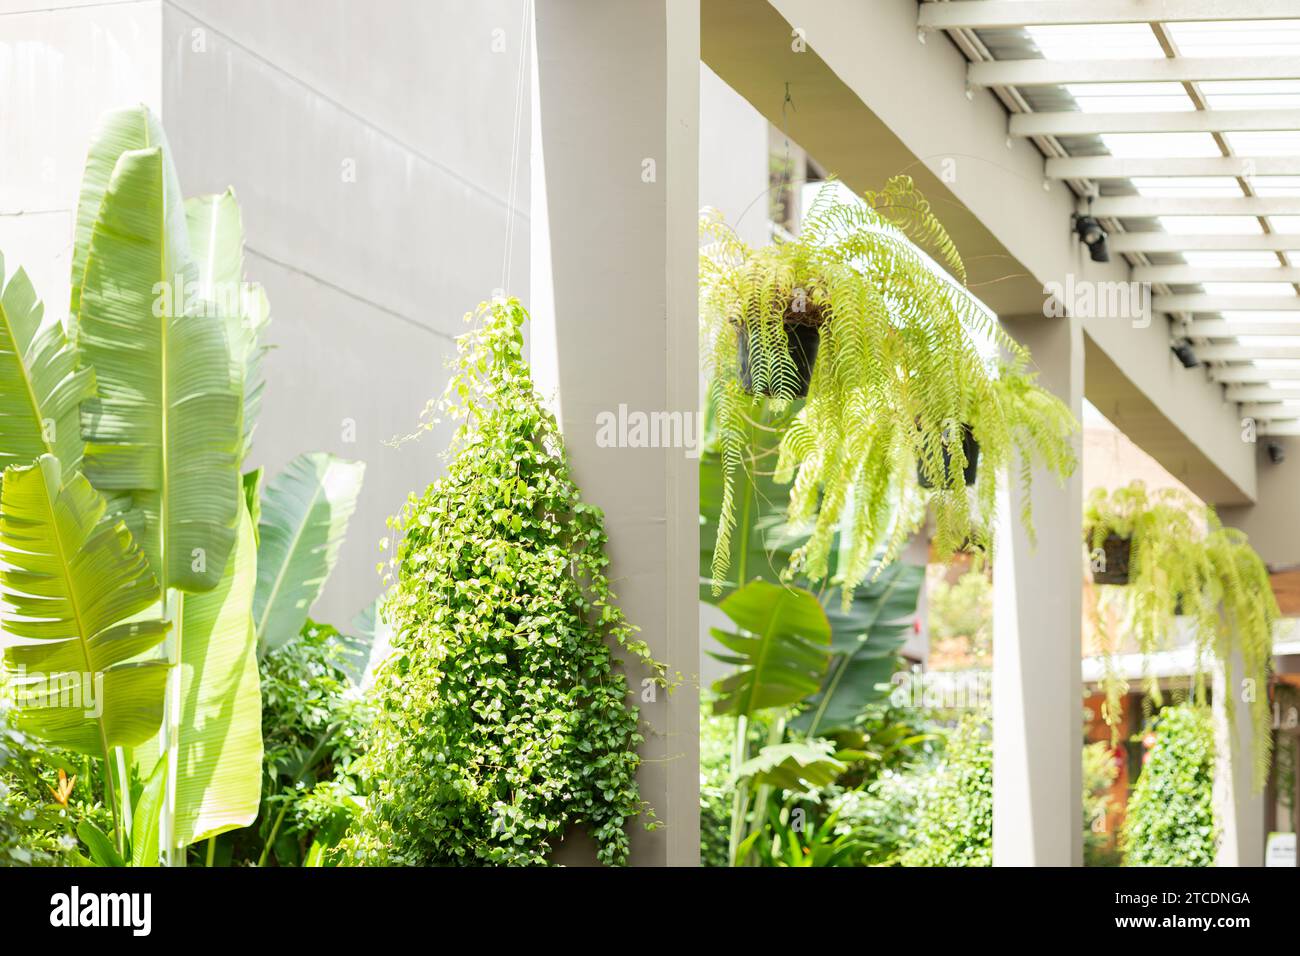 Grüner Öko-öffentlicher Bereich, Garten-Flur-Gebäudebereich mit Inneneinrichtung mit Botanik-Baum zur Energieeinsparung, erfrischende Kühlluft und Ozon. Stockfoto